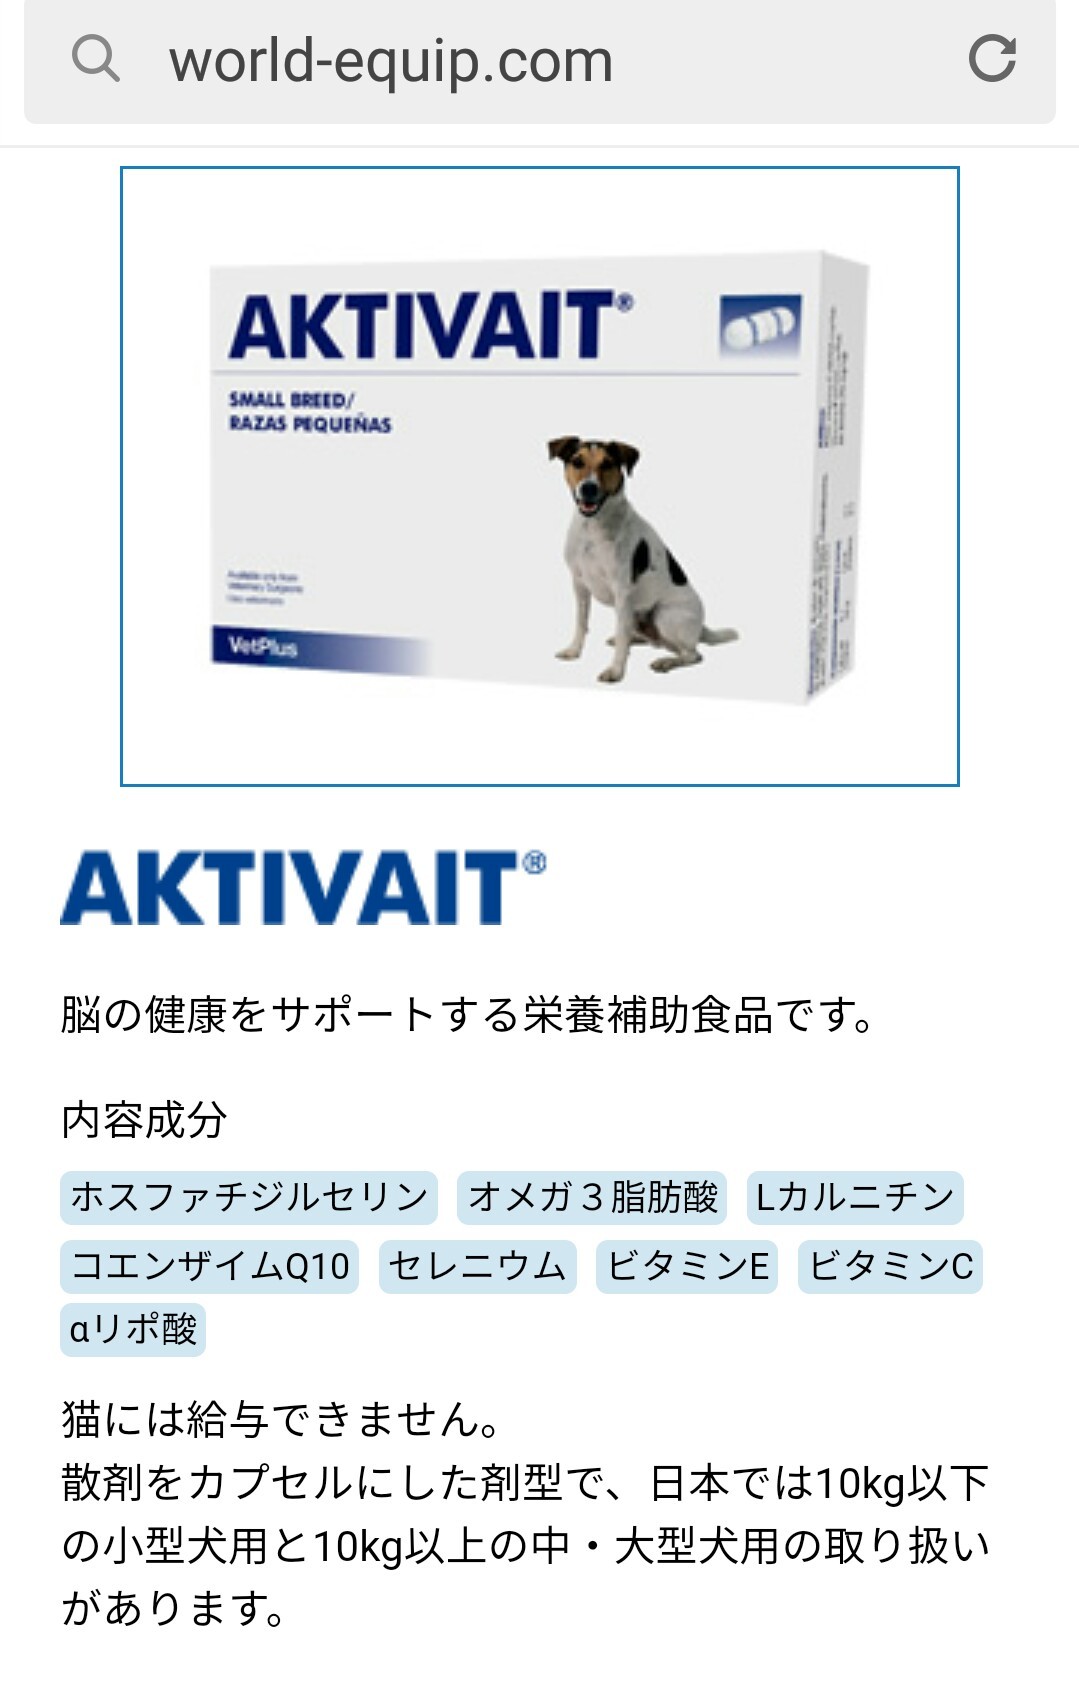 大人の上質AKTIVAIT アクティベート 小型犬用 認知機能サポート